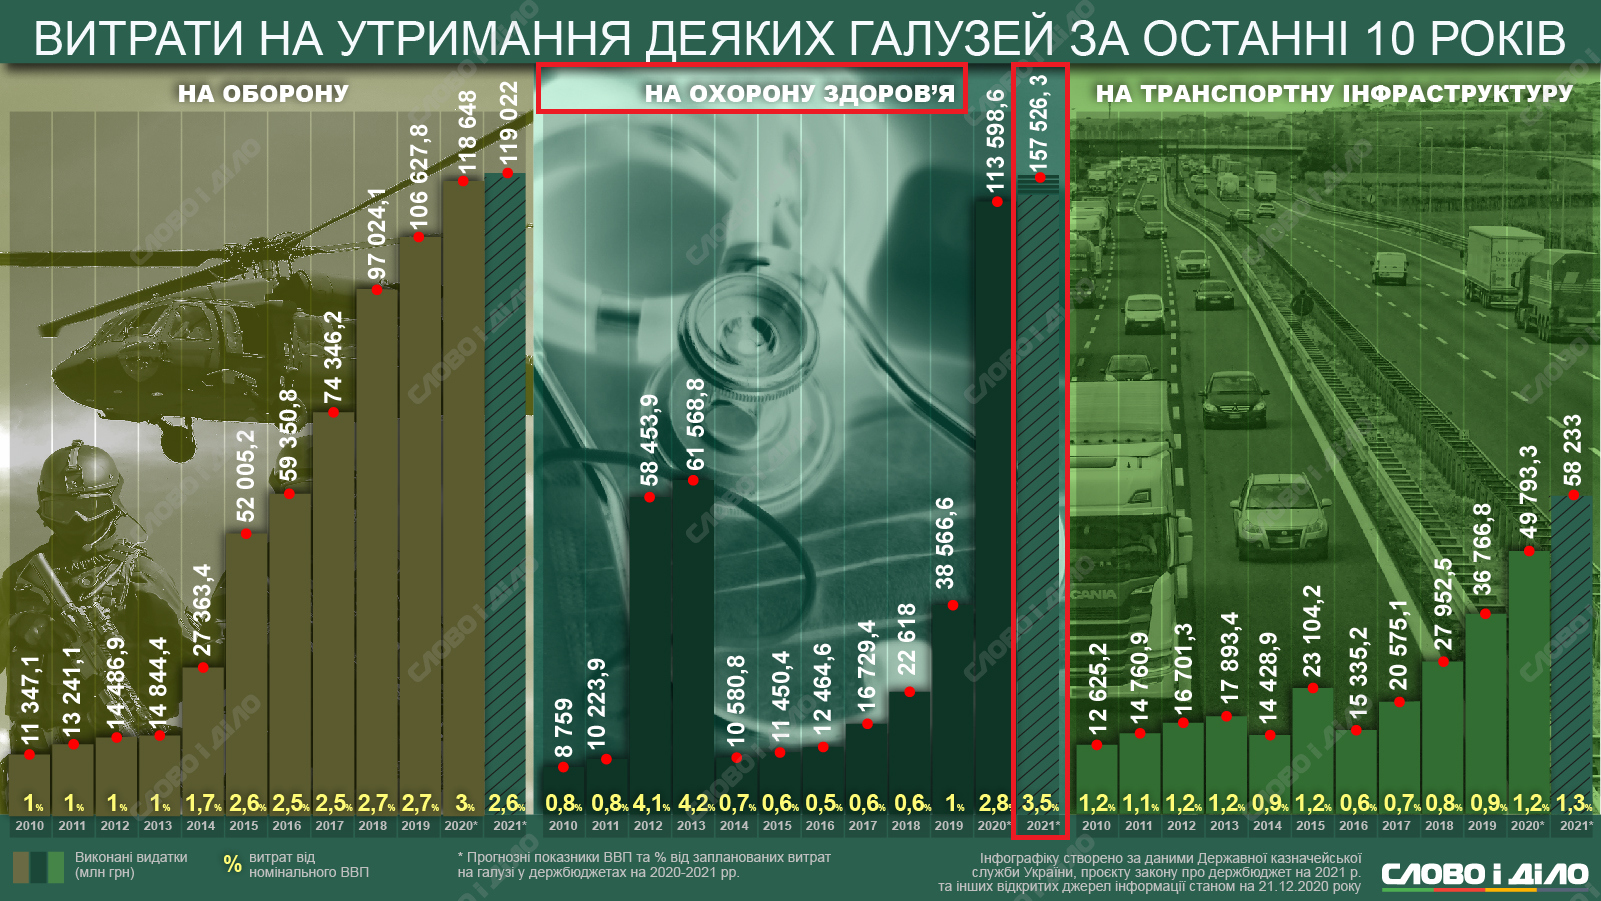 https://www.slovoidilo.ua/2020/12/22/infografika/finansy/oborona-medycyna-infrastruktura-derzhavni-vytraty-ostanni-10-rokiv